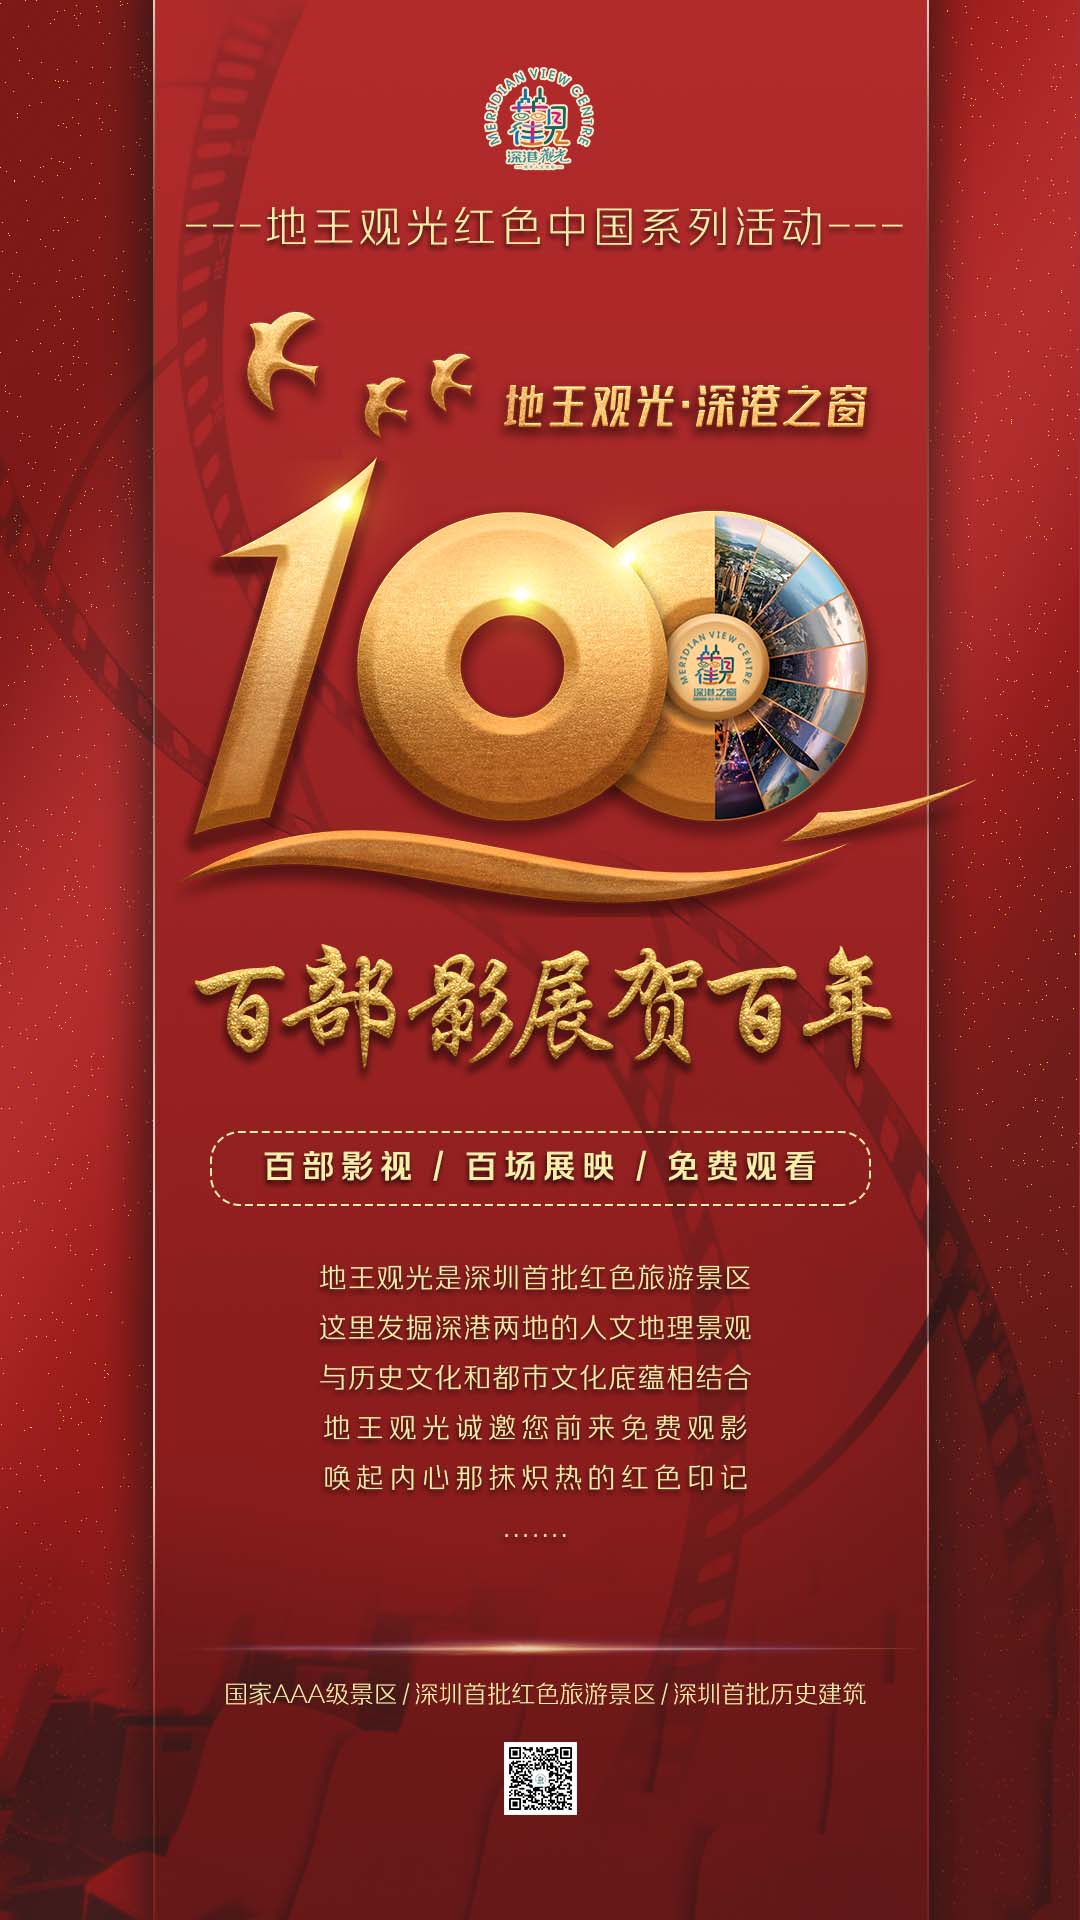 地王观光红色中国系列活动之百部影展贺百年